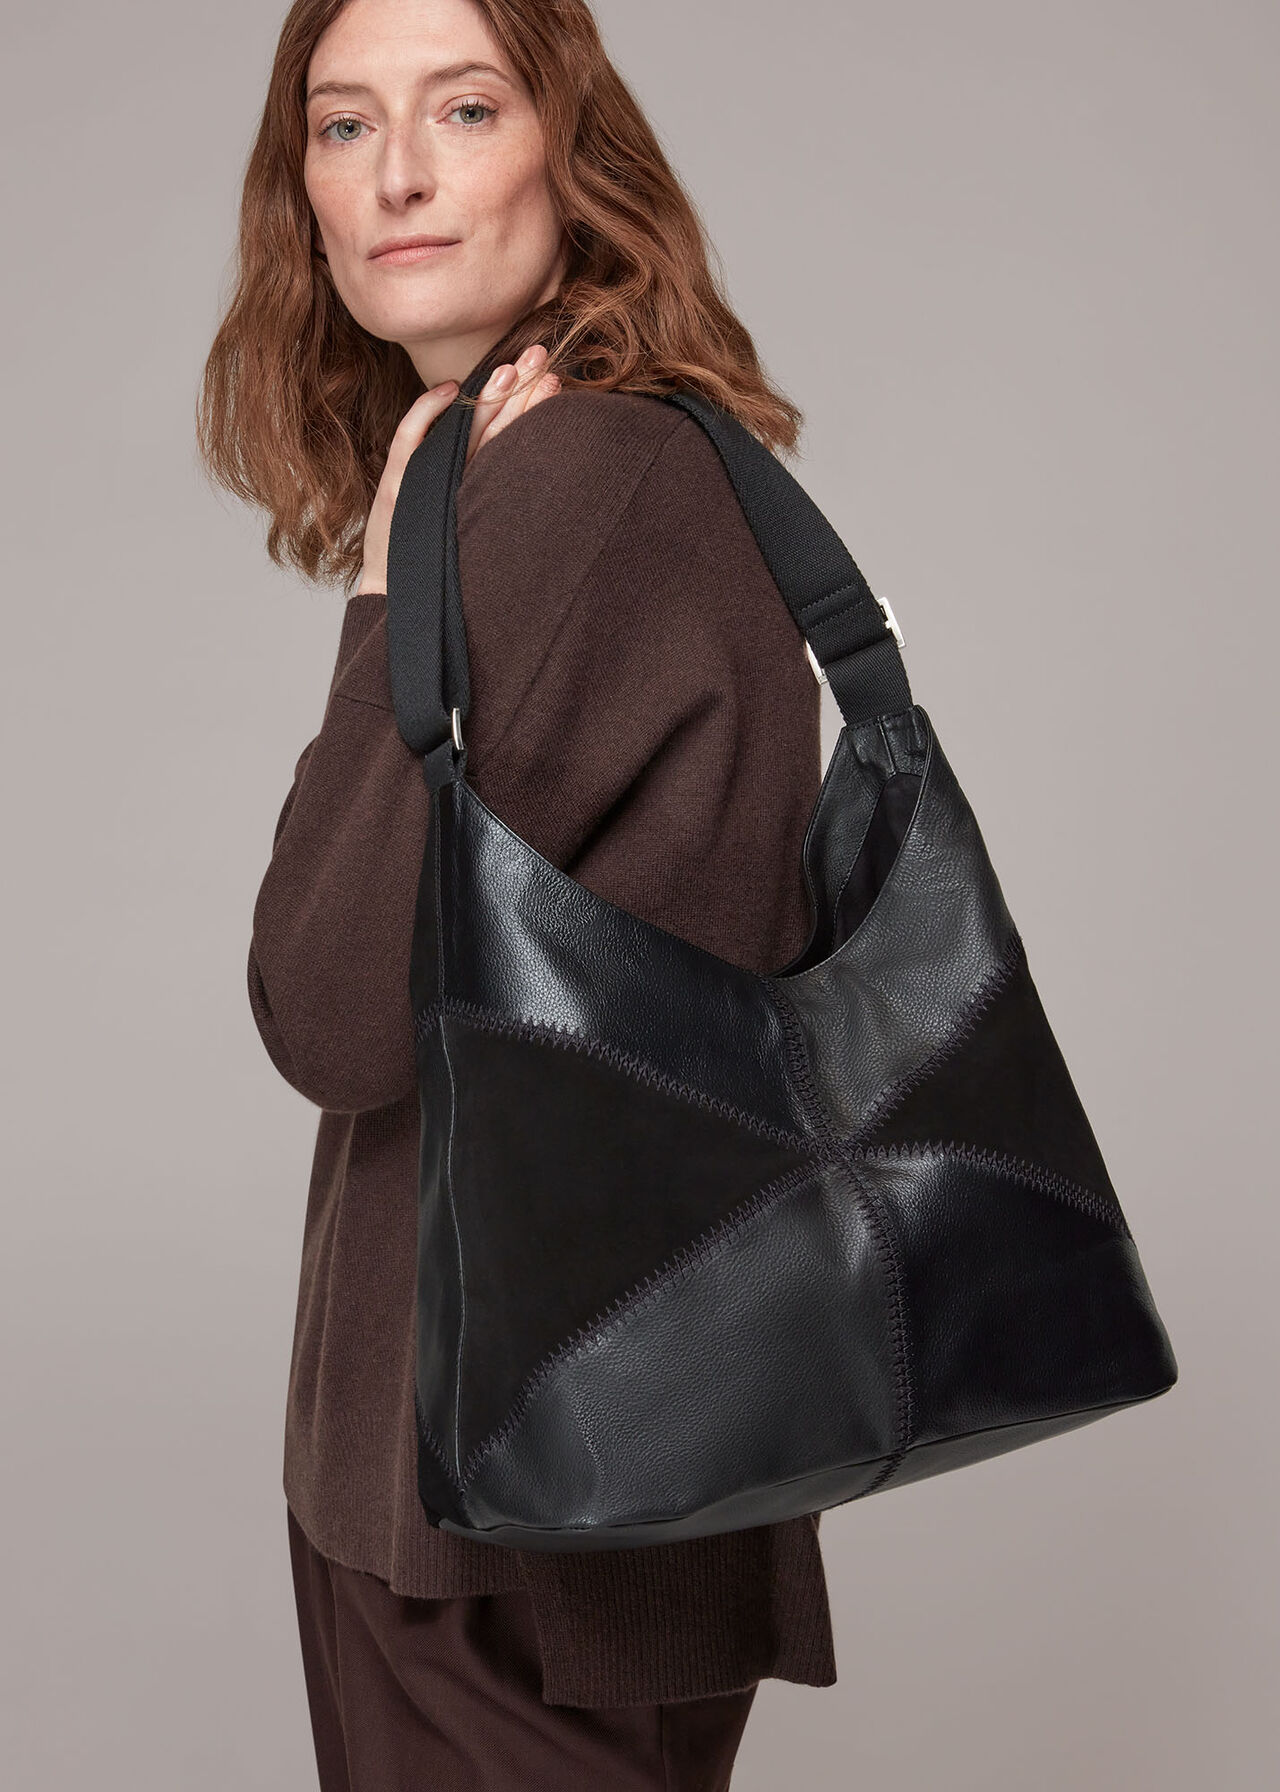 Norah Patchwork Shoulder Bag